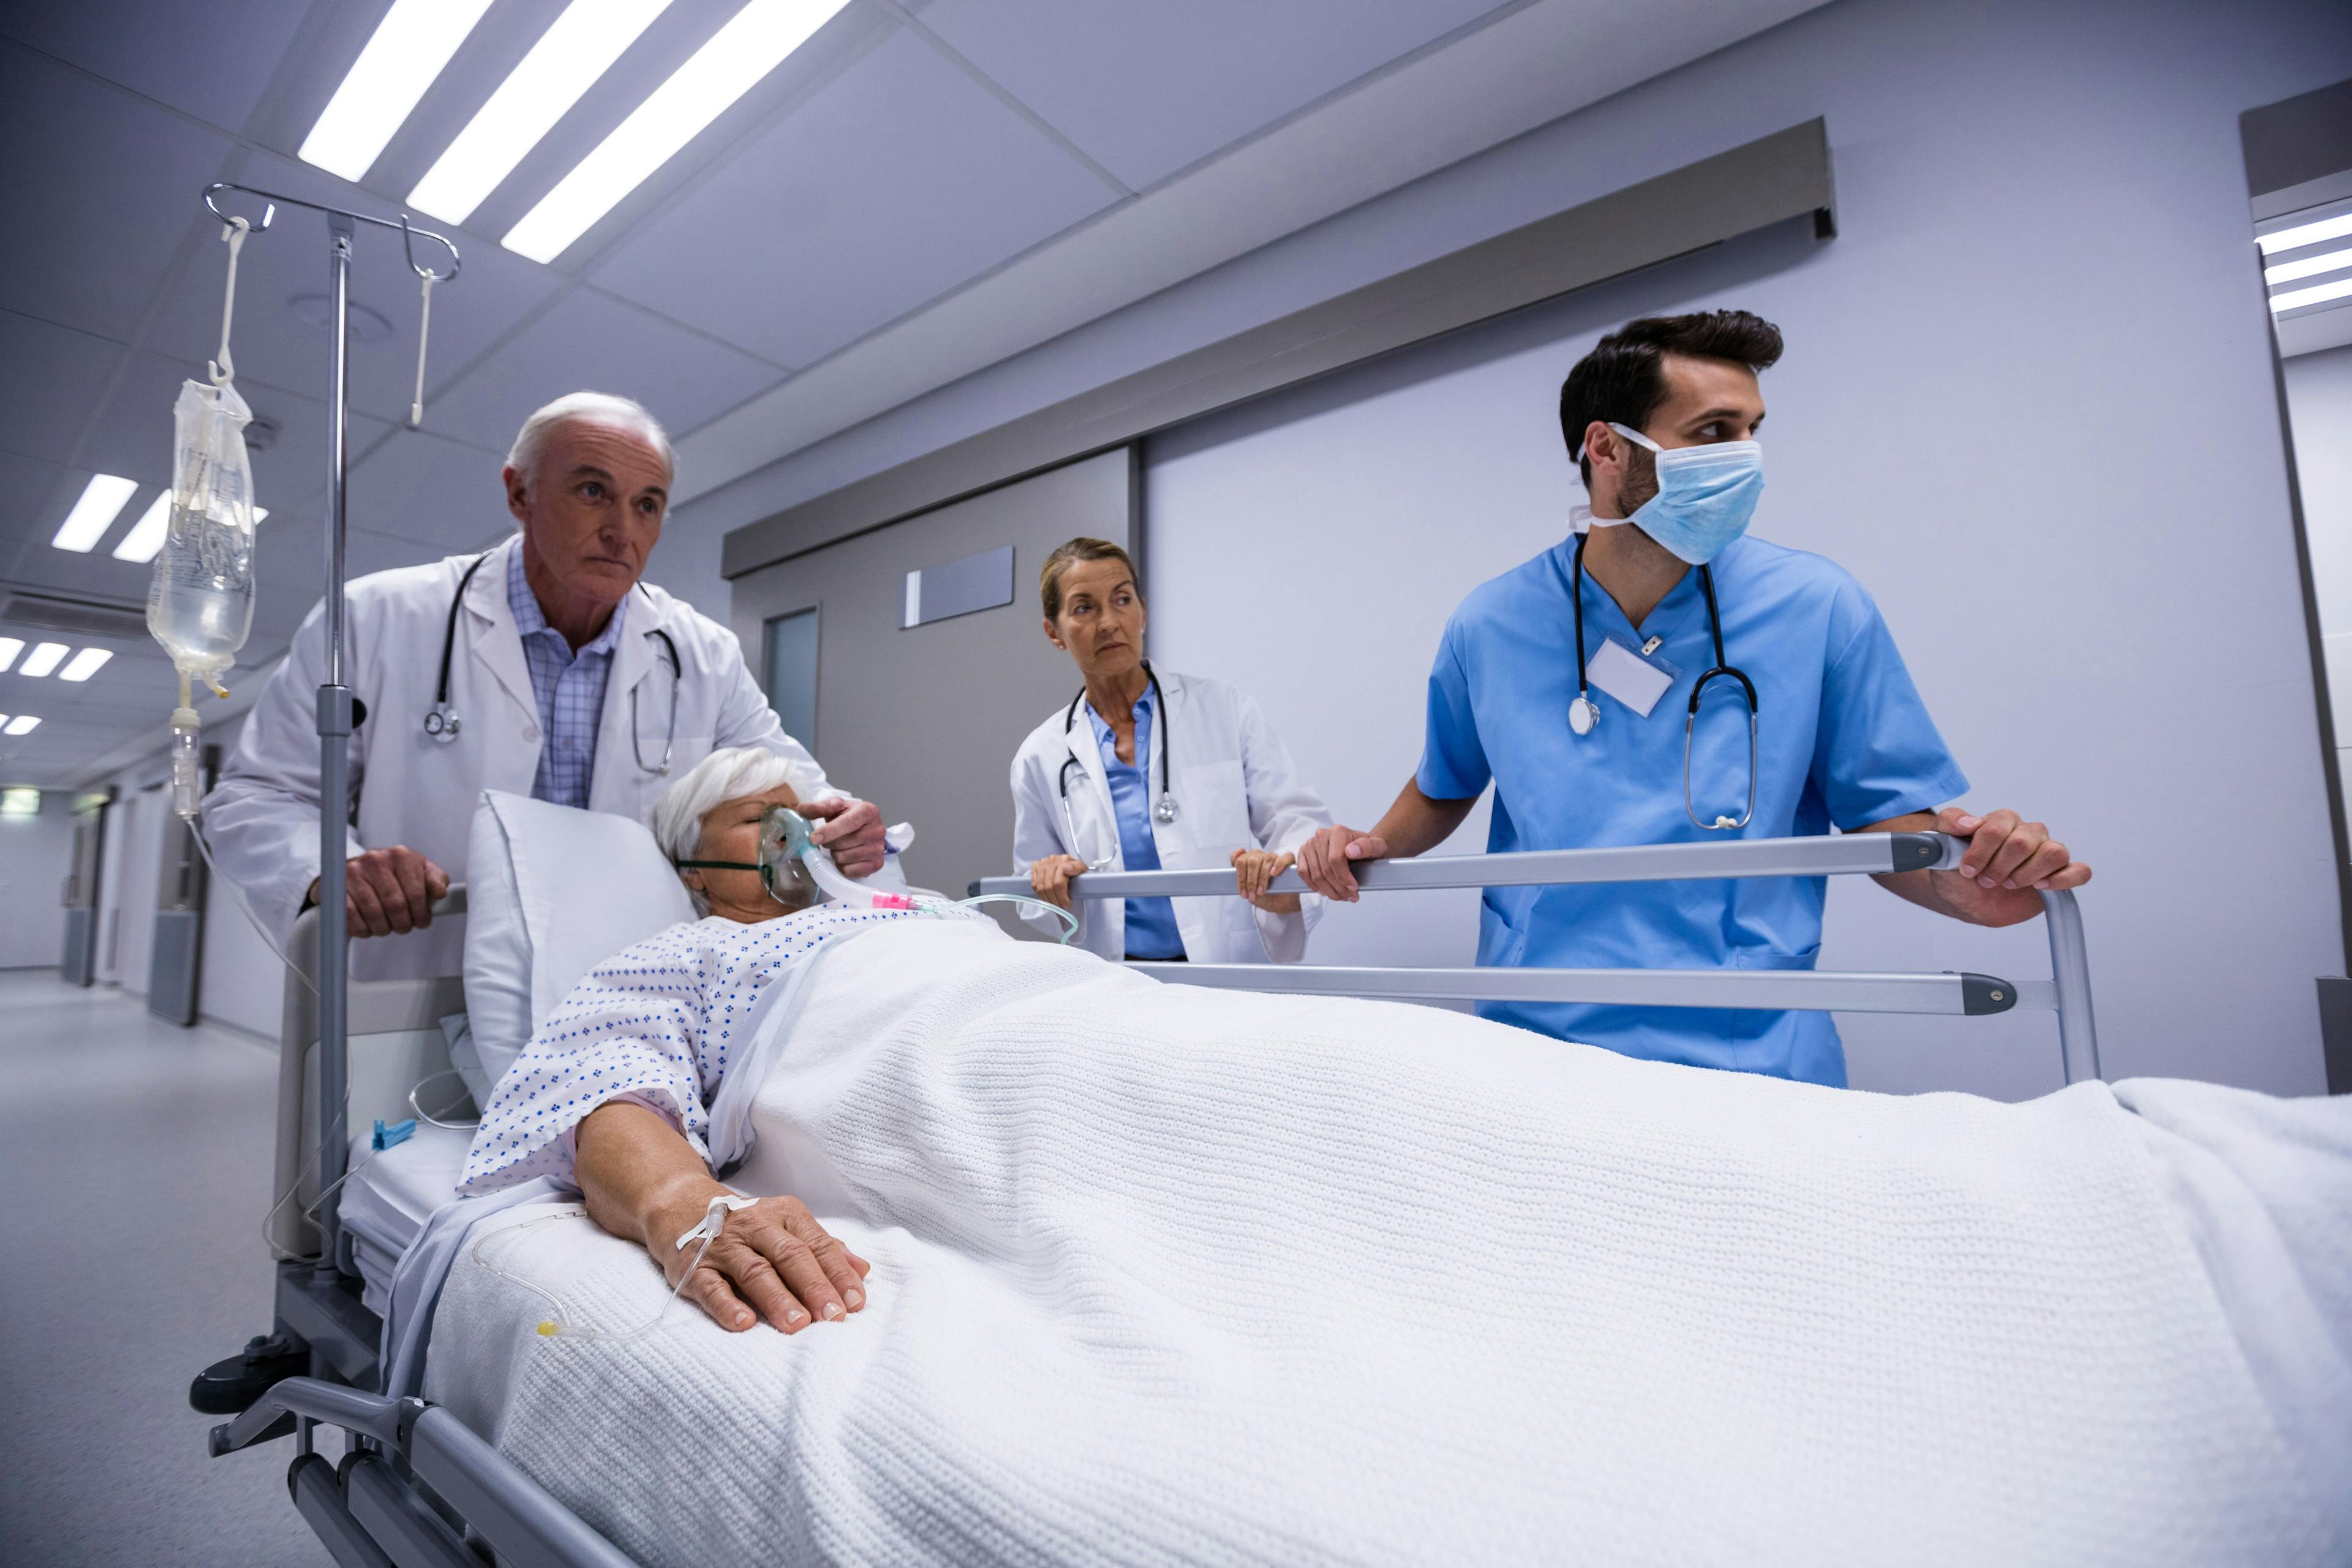 Improving hospital safety: Healthgrades' chief medical officer outlines key steps